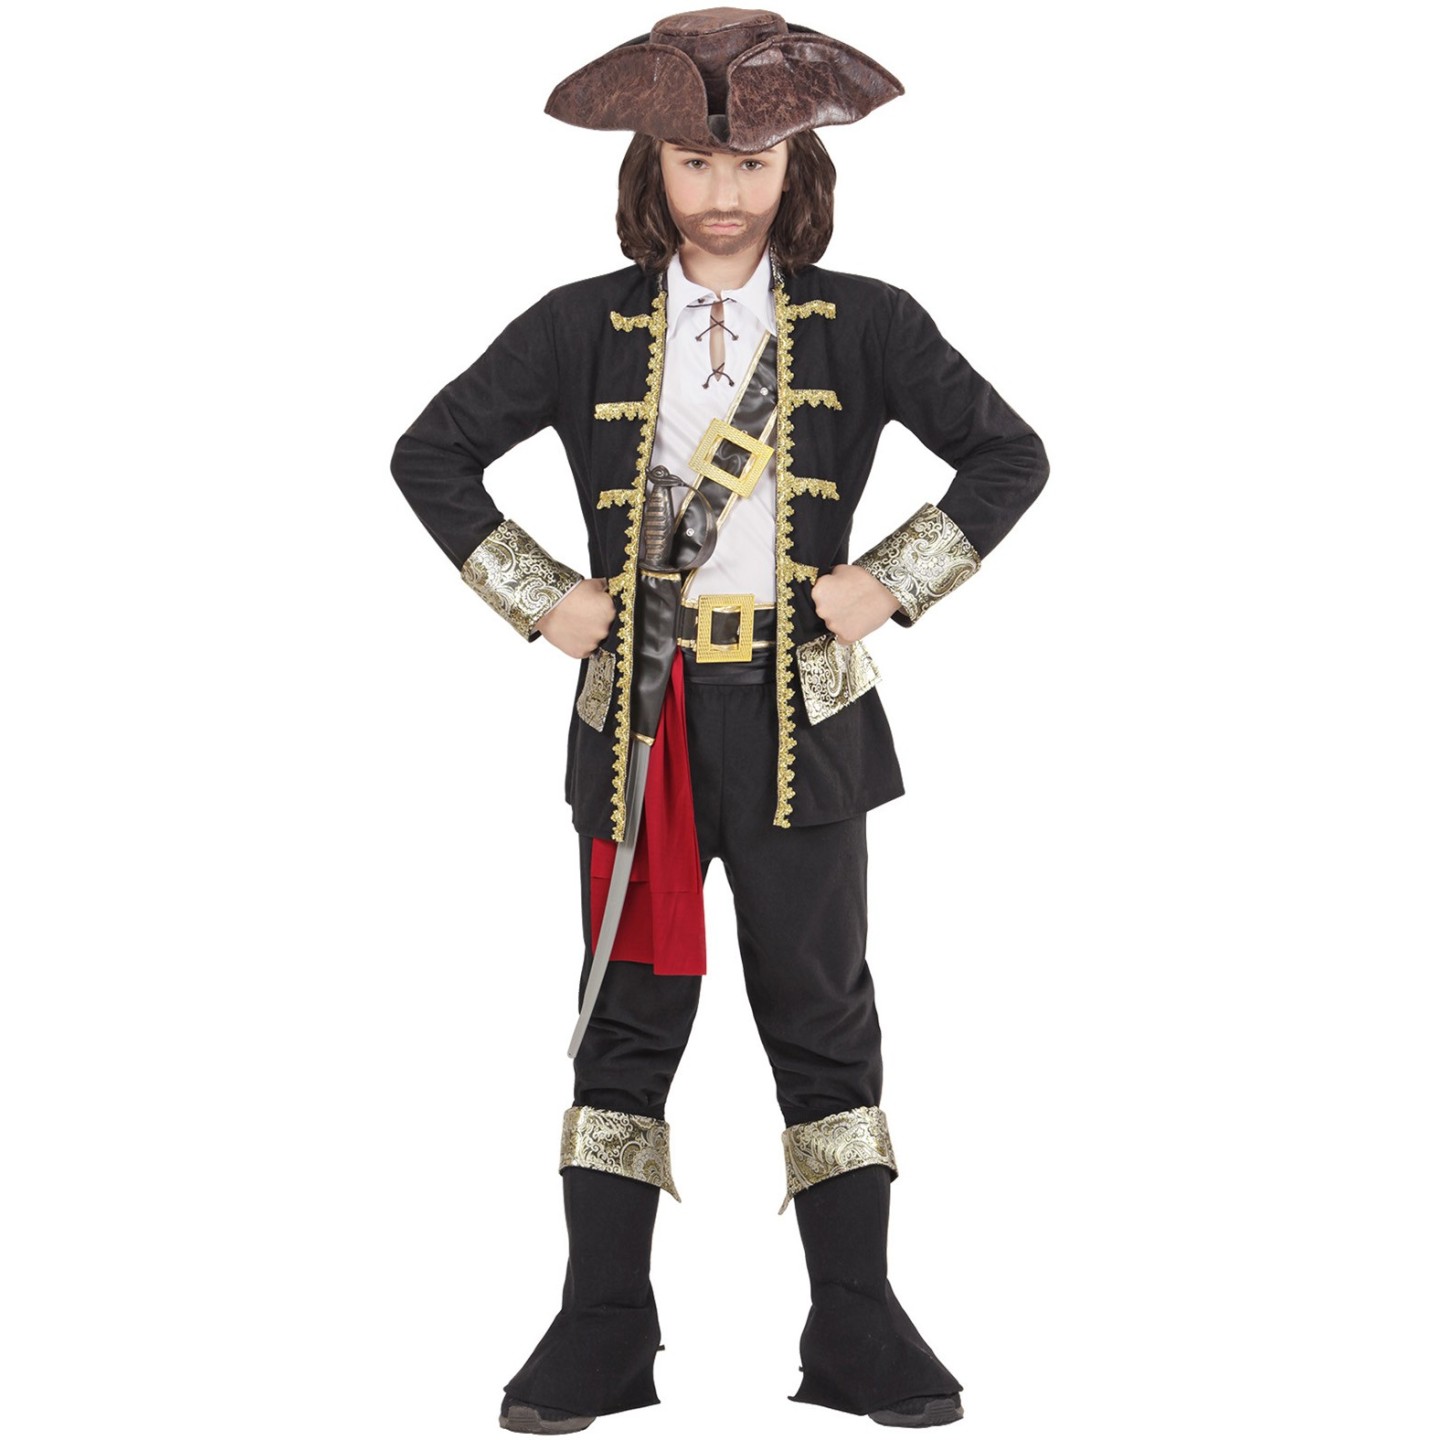 Onbemand Vaarwel wijs Piraten kostuum kind kopen ? | Jokershop.be - Carnavalskleding